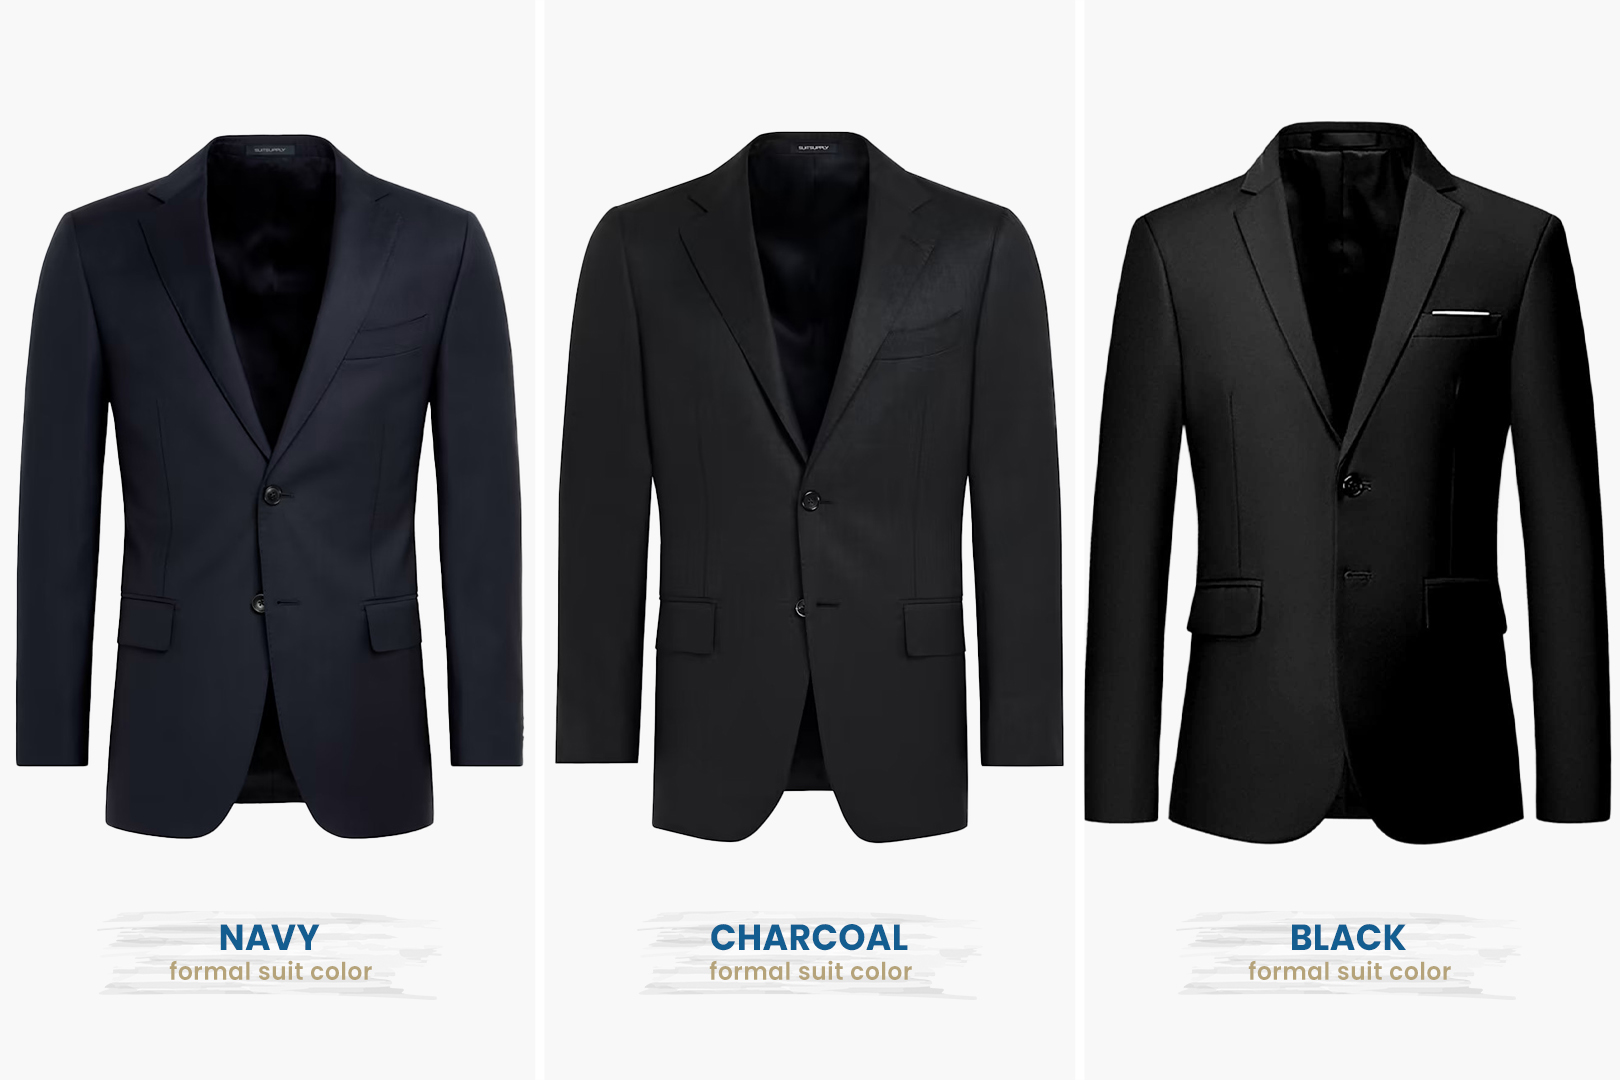 black-tie optional suit color choices: navy vs. charcoal vs. black